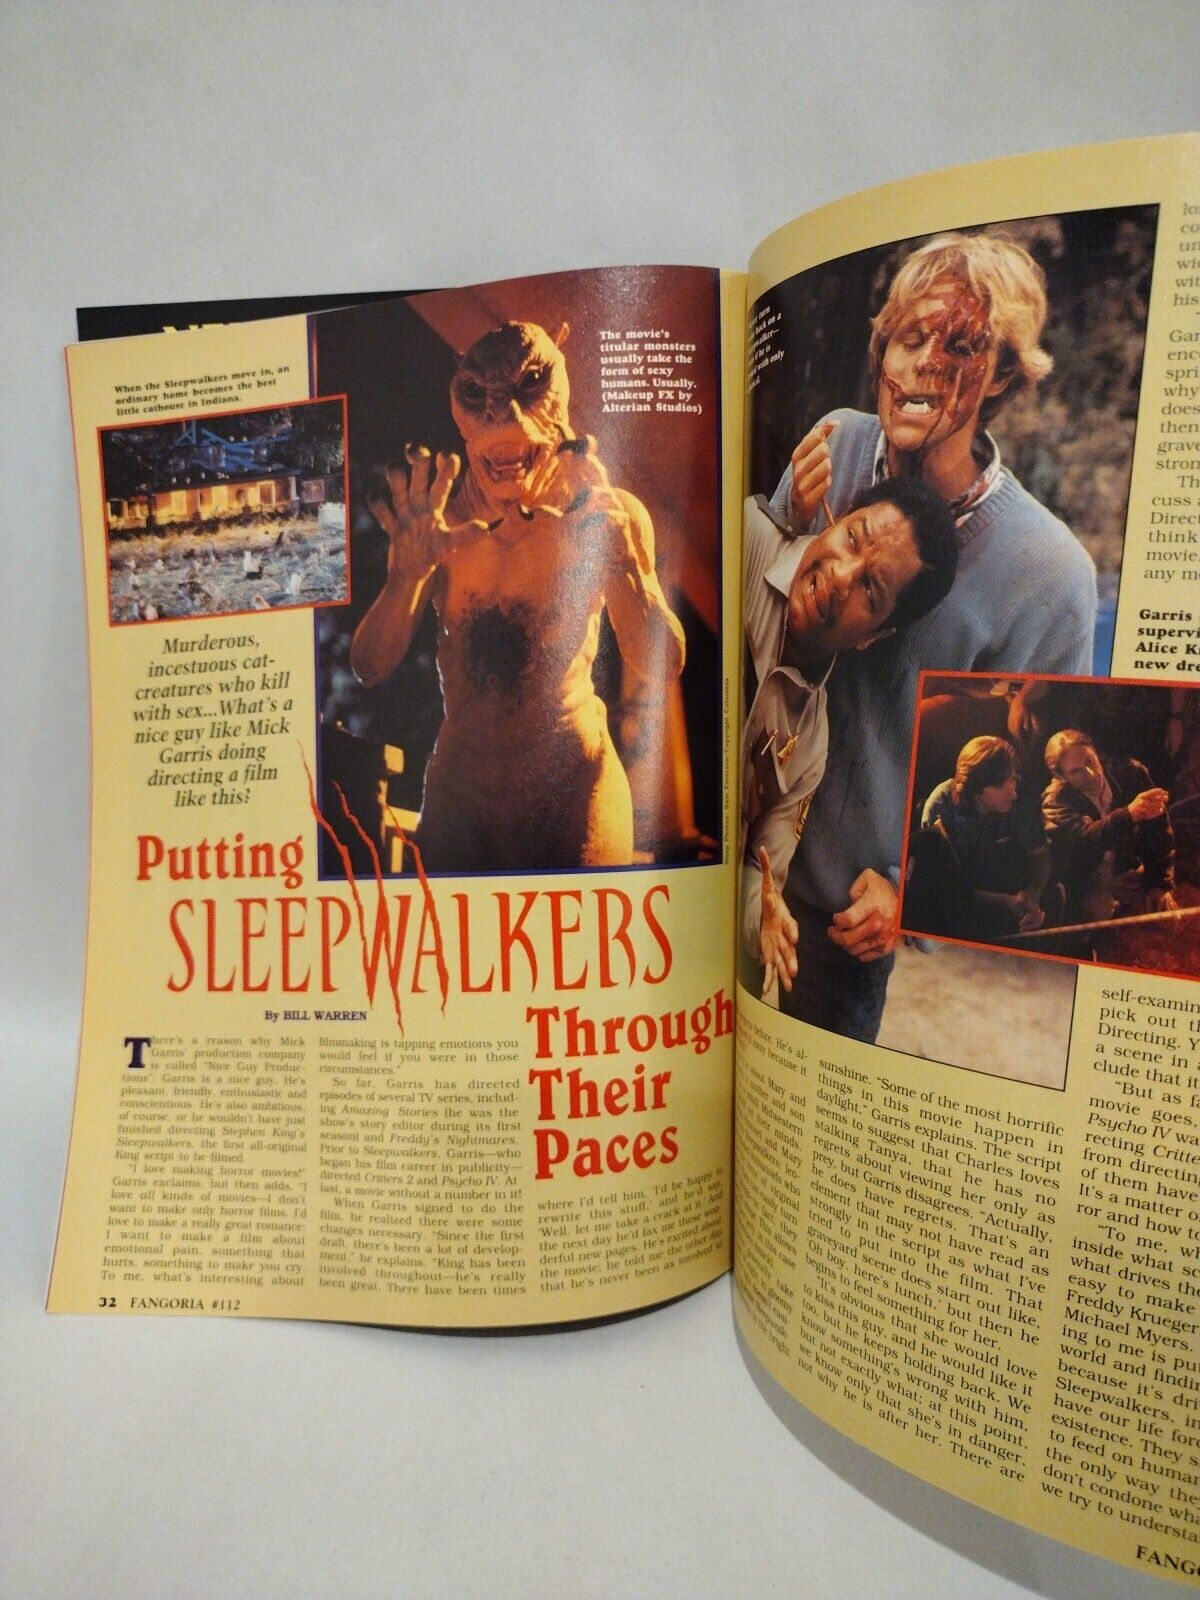 FANGORIA Magazine #112 (1992) Hellraiser III Naked Lunch Alien 3 Sleepwalkers 